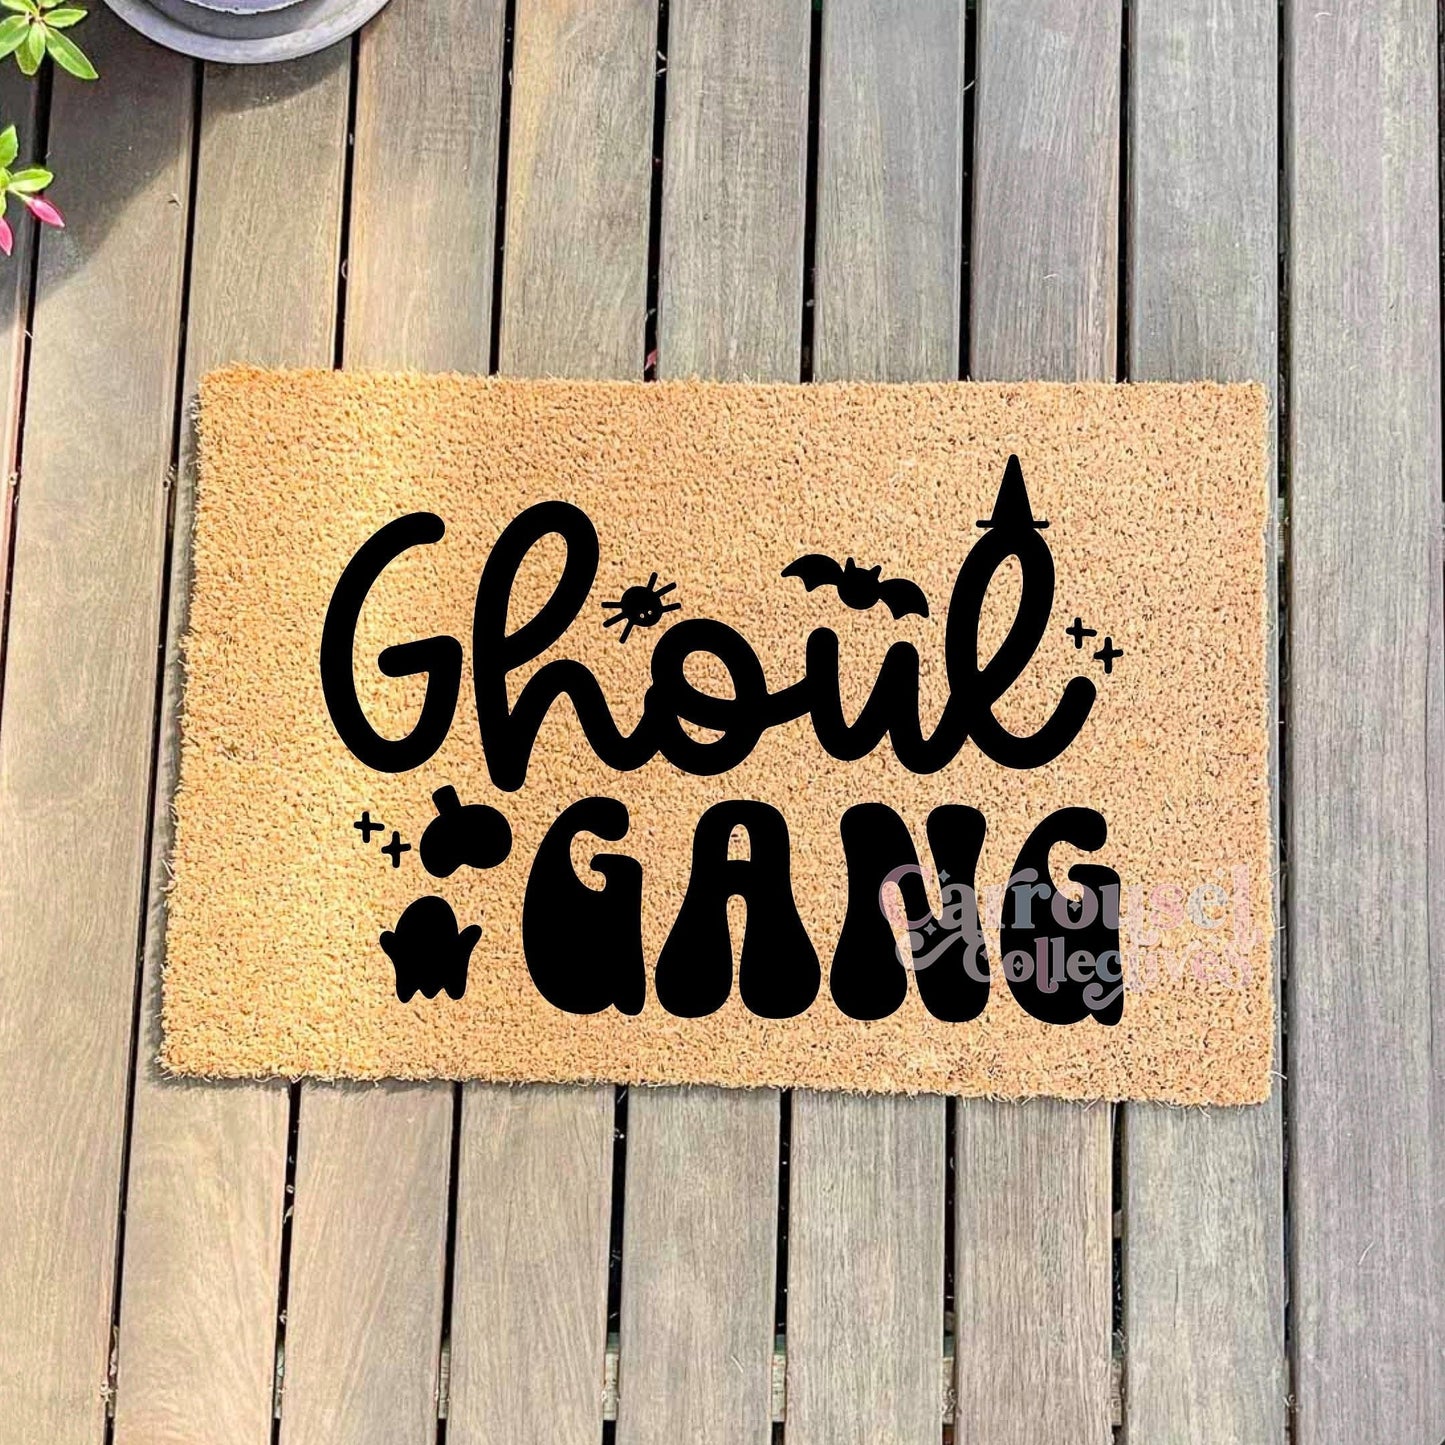 Ghoul Gang doormat, Halloween Doormat, Spooky Doormat, Creepy Doormat